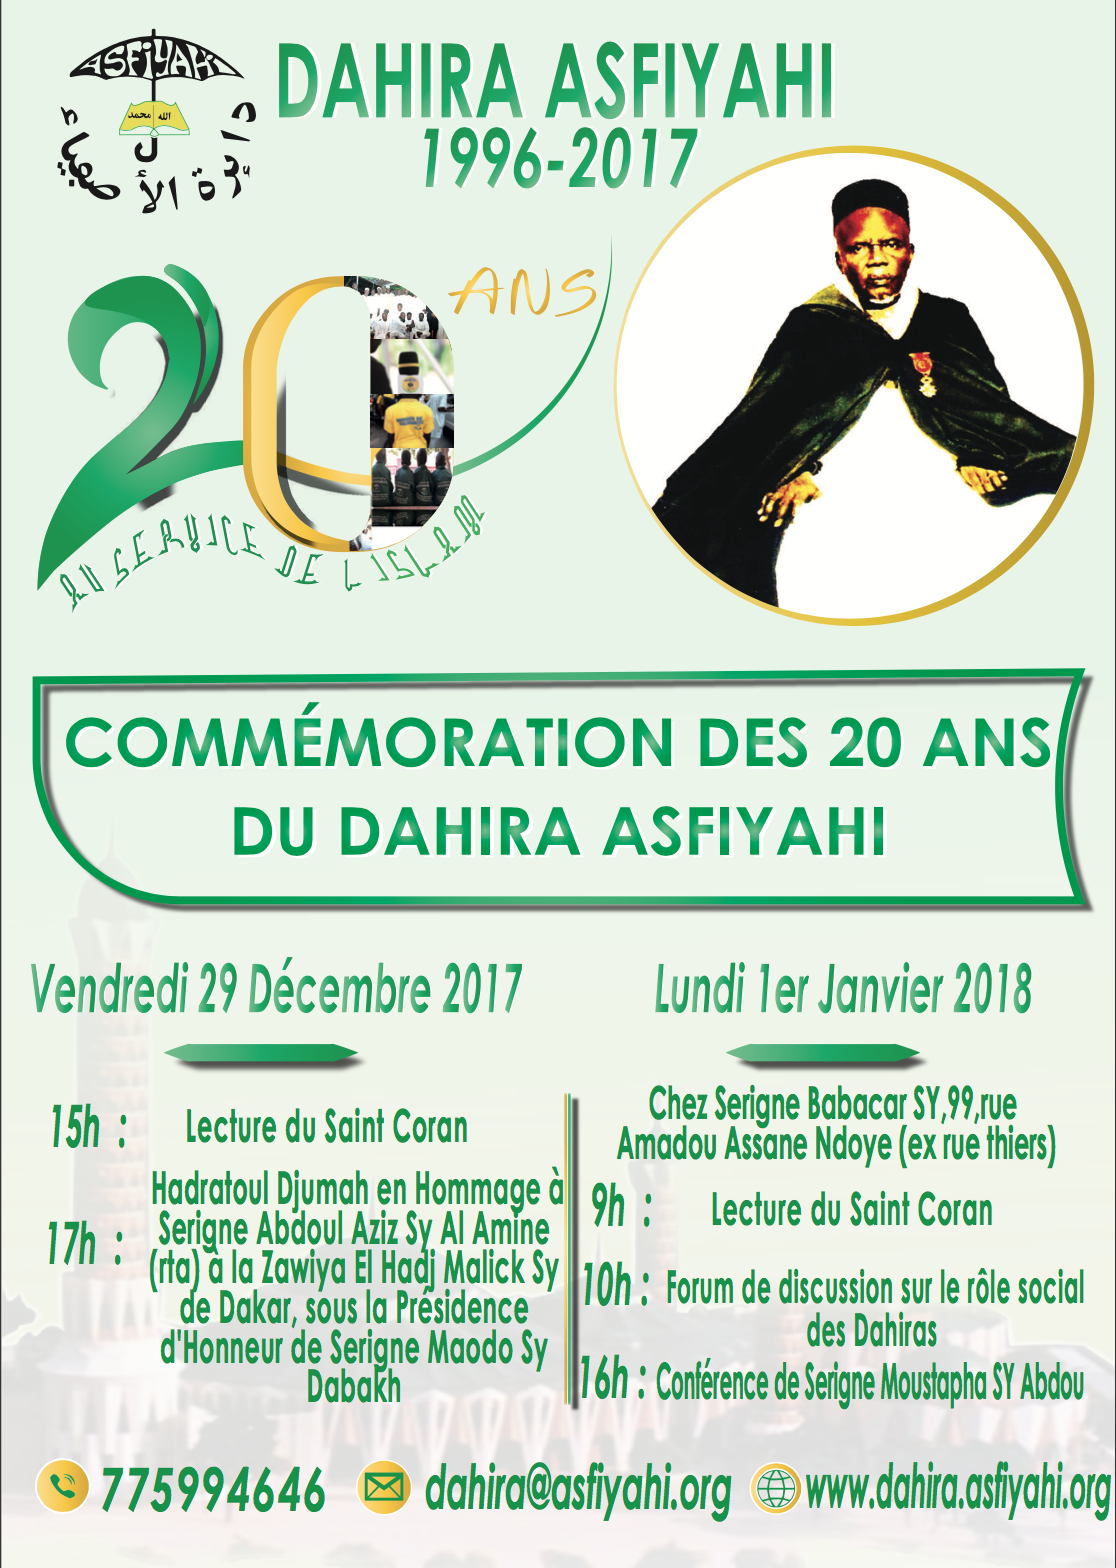 INVITATION - Commémoration des 20 ans du Dahiratoul Asfiyahi de Dakar Plateau: Lundi 1er Janvier 2018